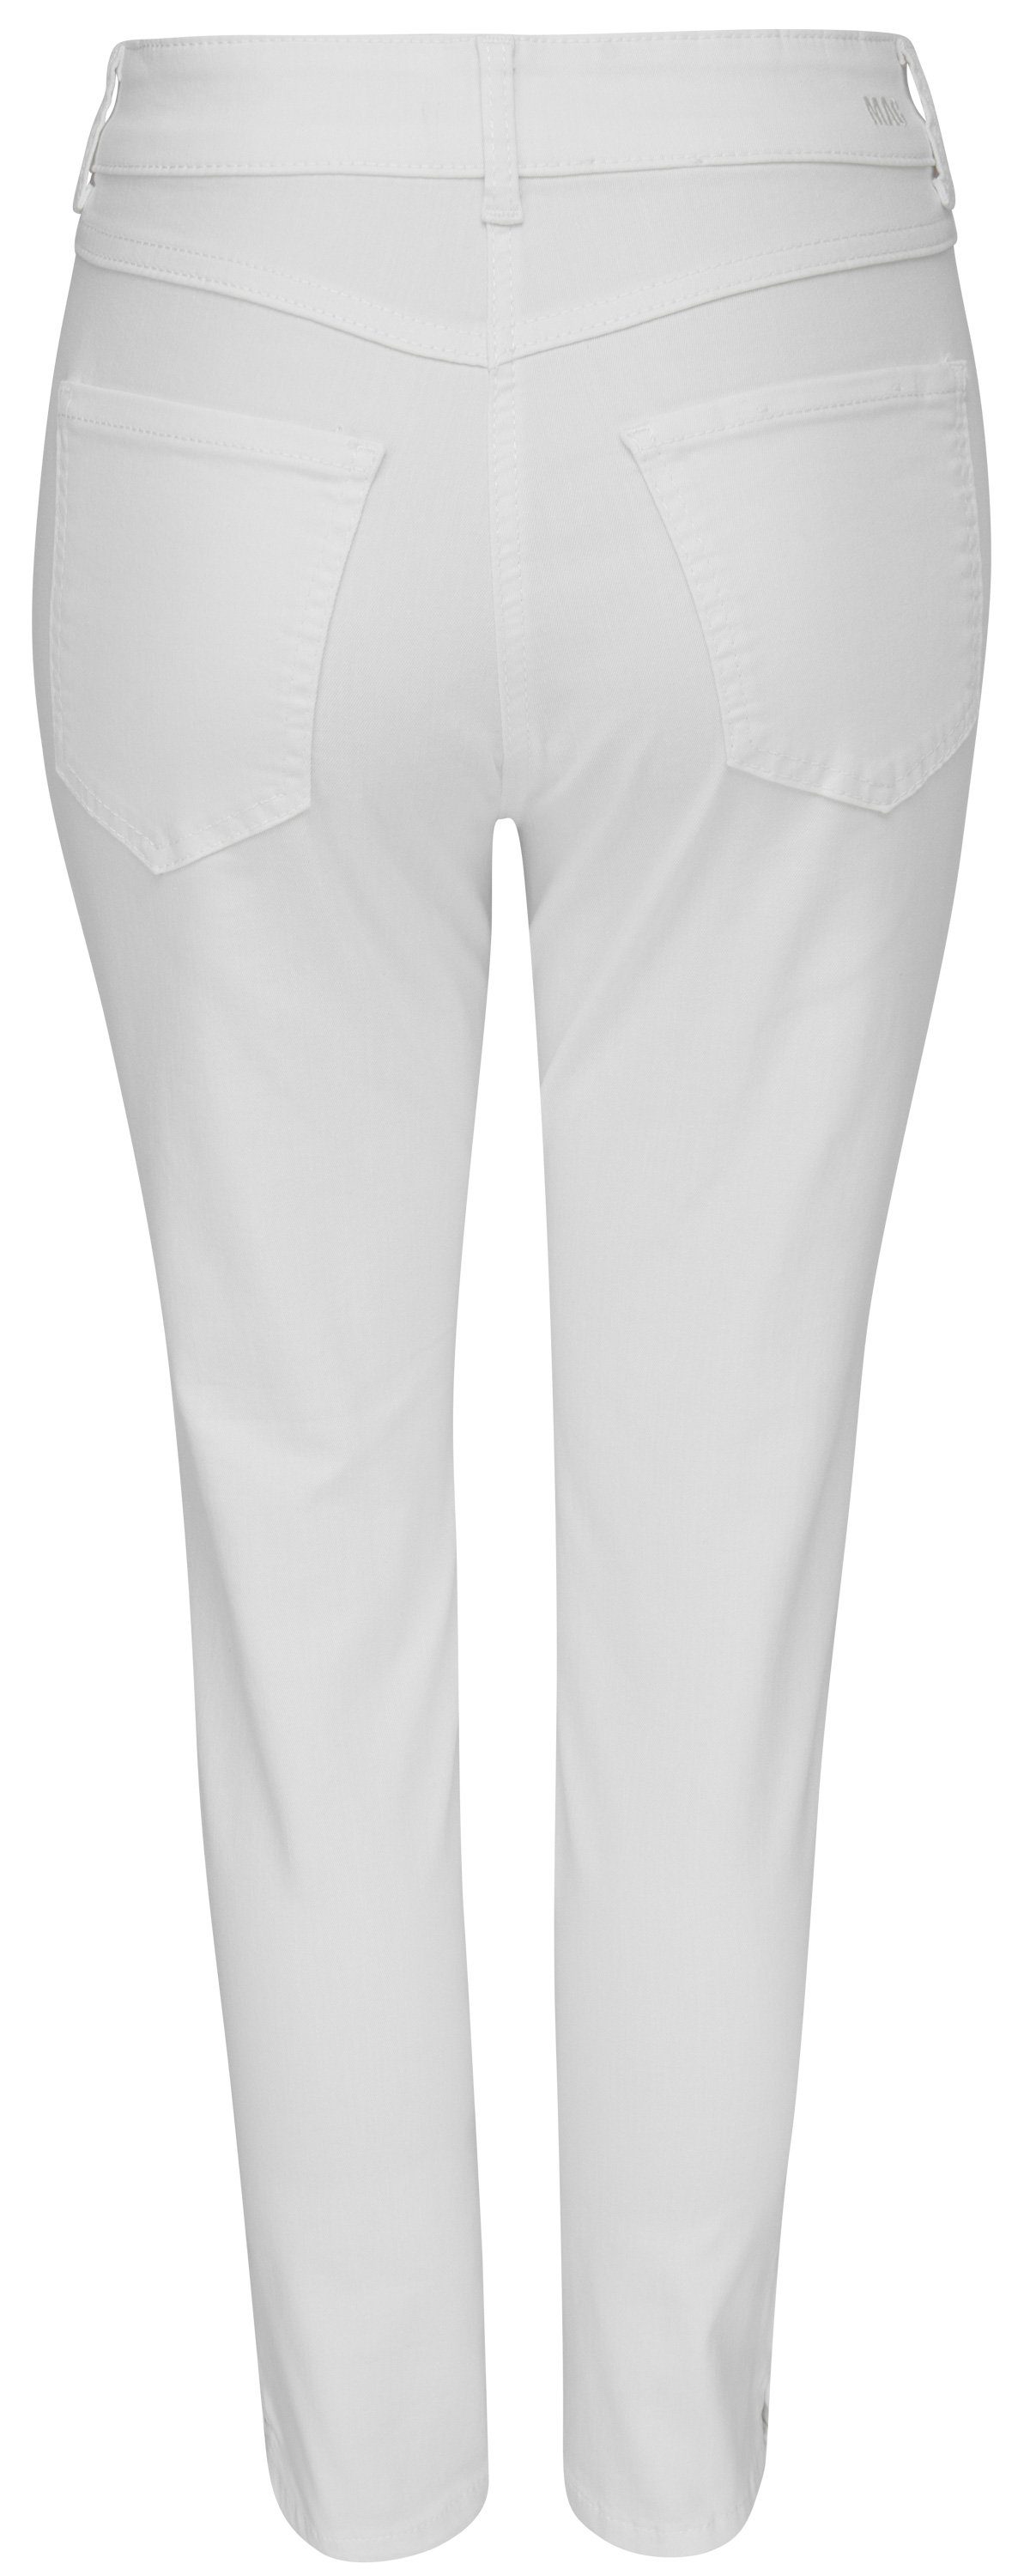 D010 Stretch-Jeans 7/8 MAC nature denim ANGELA SUMMER MAC 5260-90-0394 white